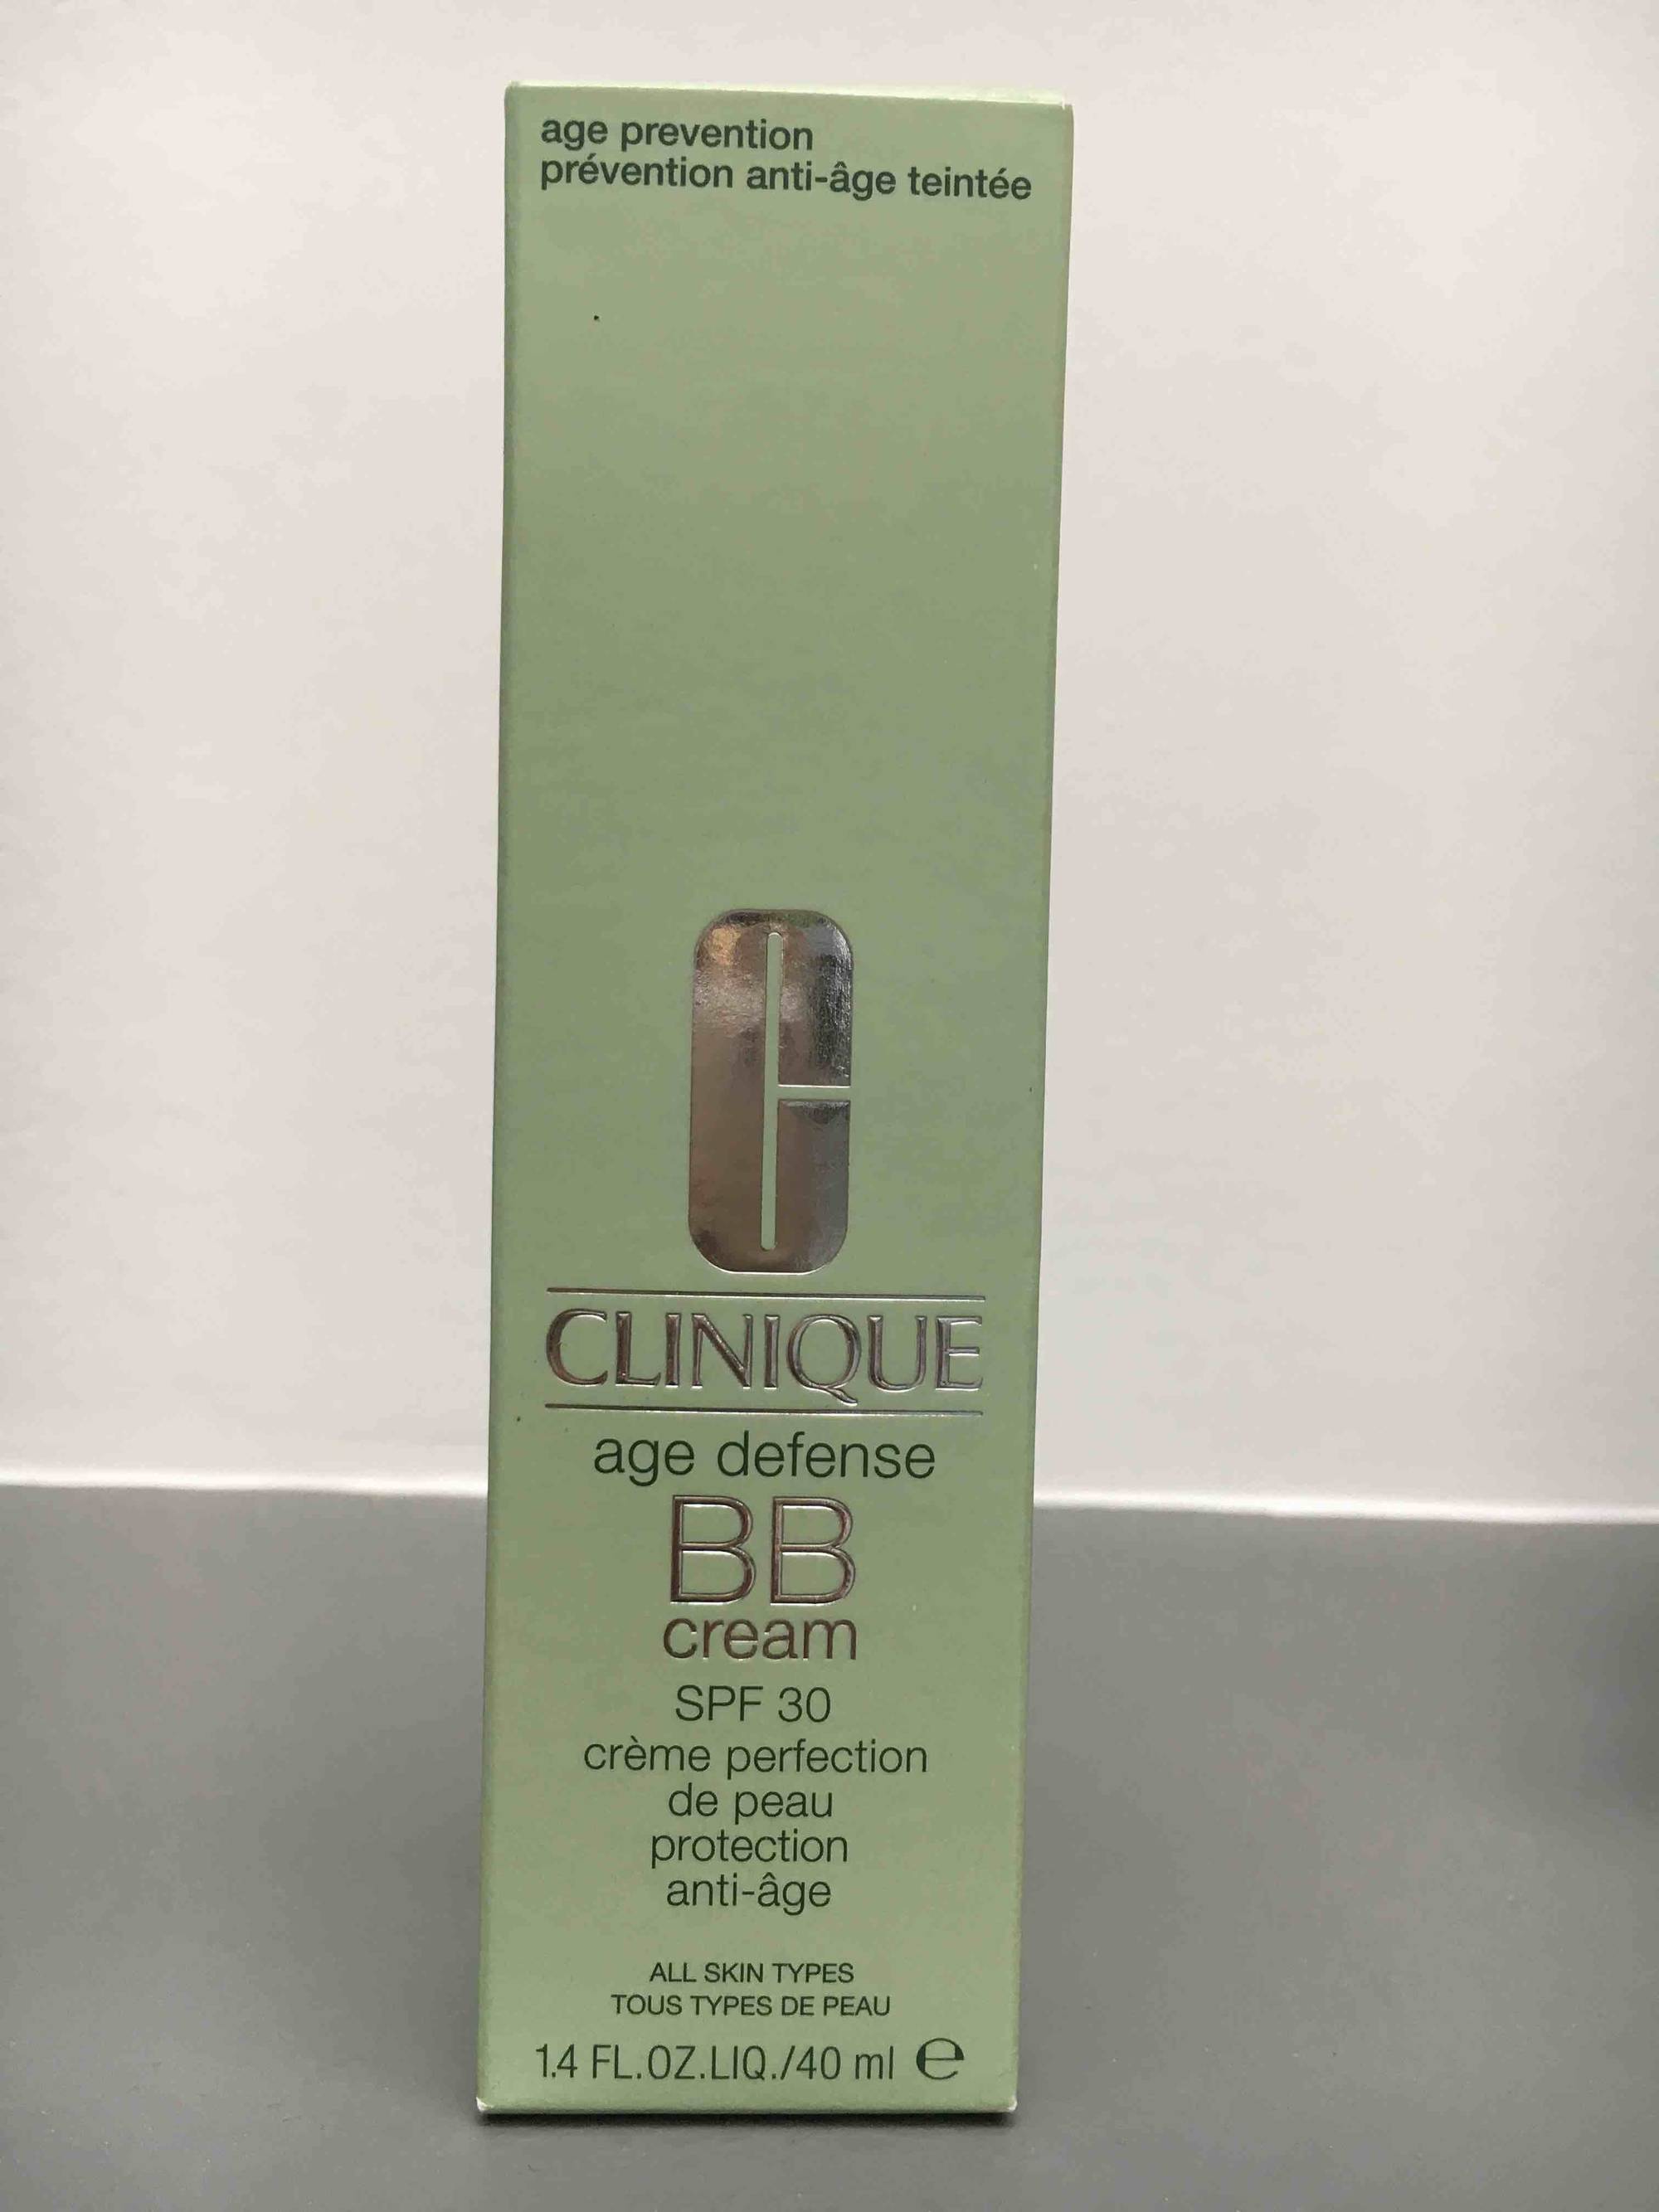 CLINIQUE - Crème perfection de peau protection anti-âge